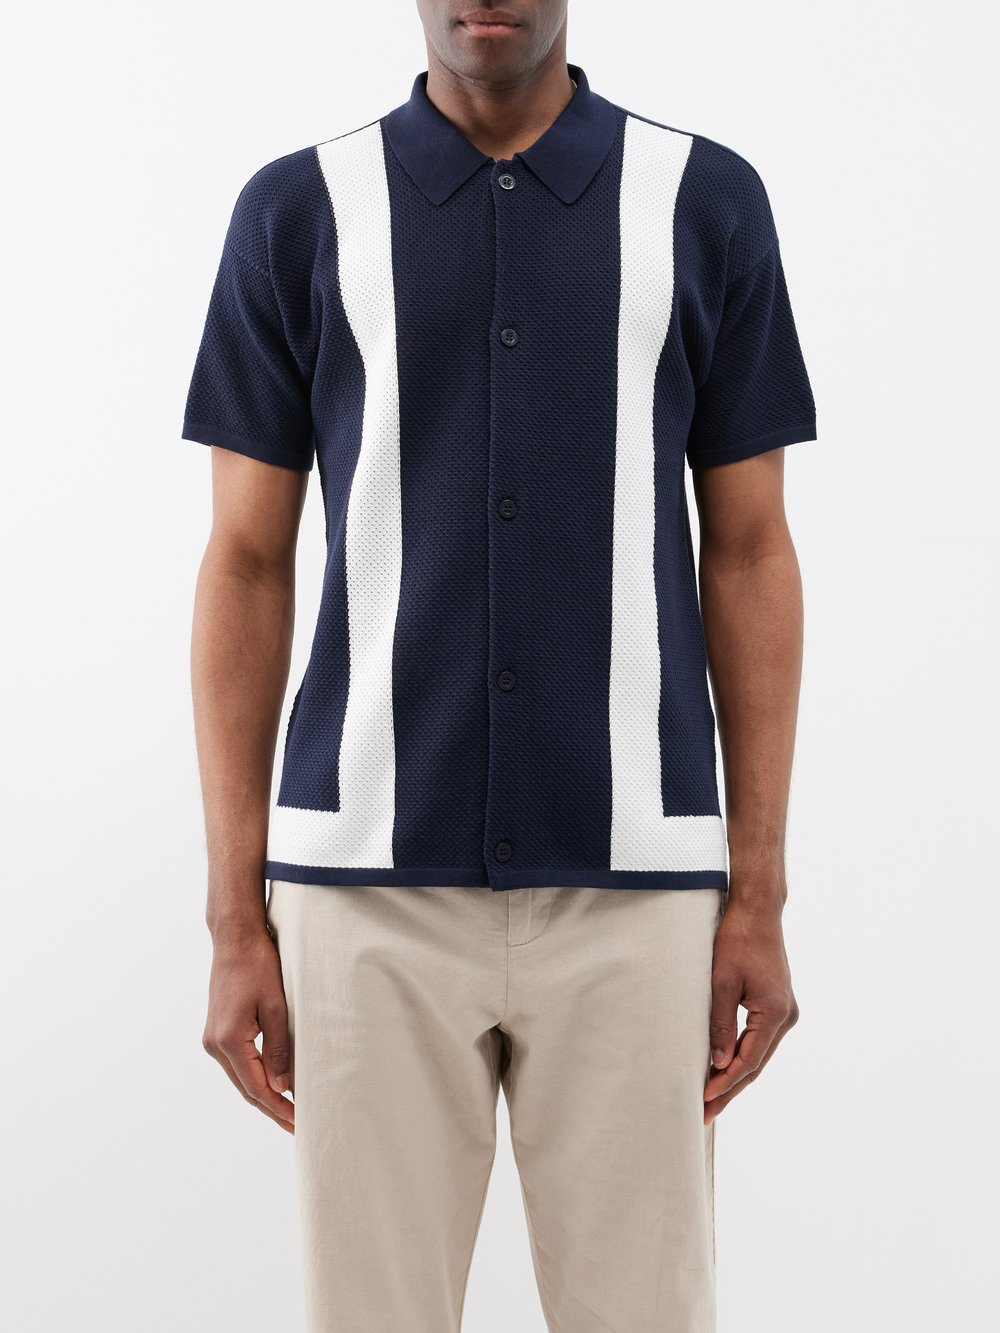 Двухцветная хлопковая рубашка-поло barretos Frescobol Carioca, синий рубашка поло в белой оправе veilance